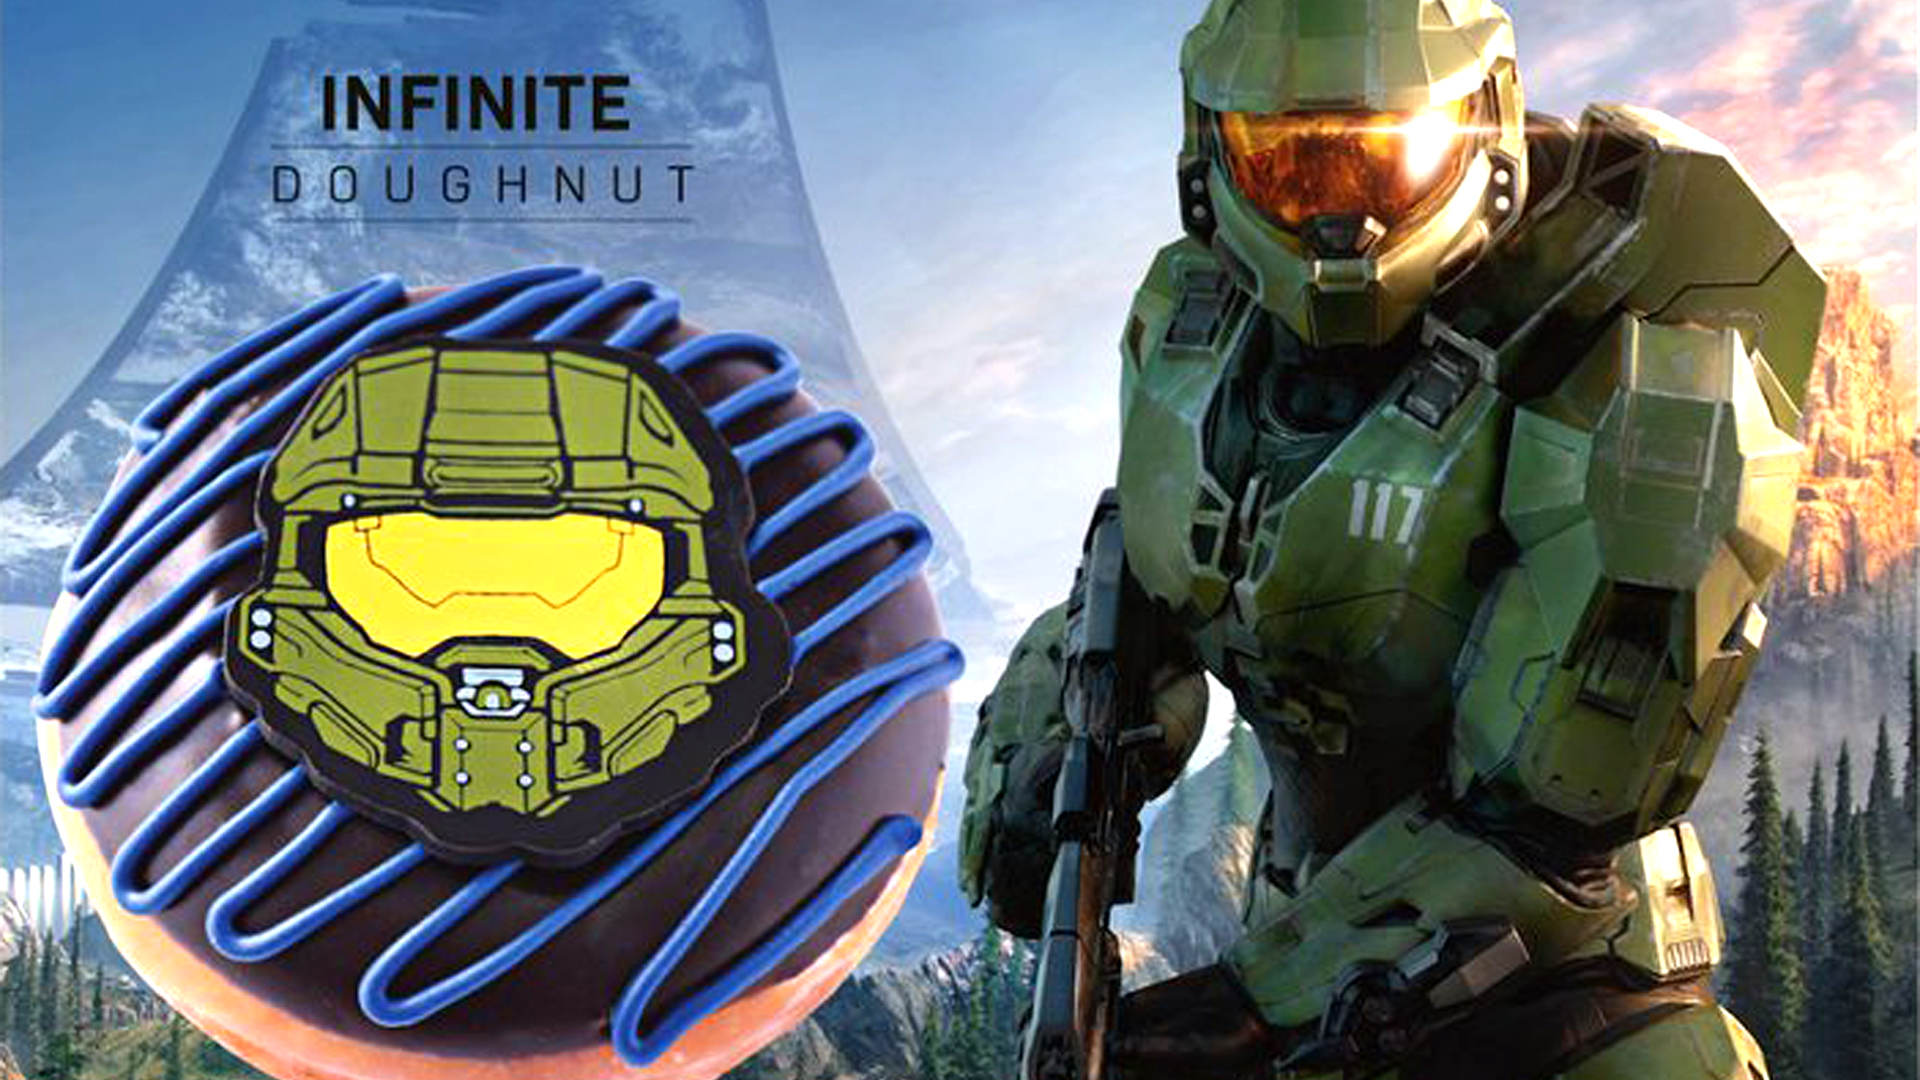 A Halo Infinite megjelenési hónapját az Xbox és a Krispy Kreme kiszivároghatta